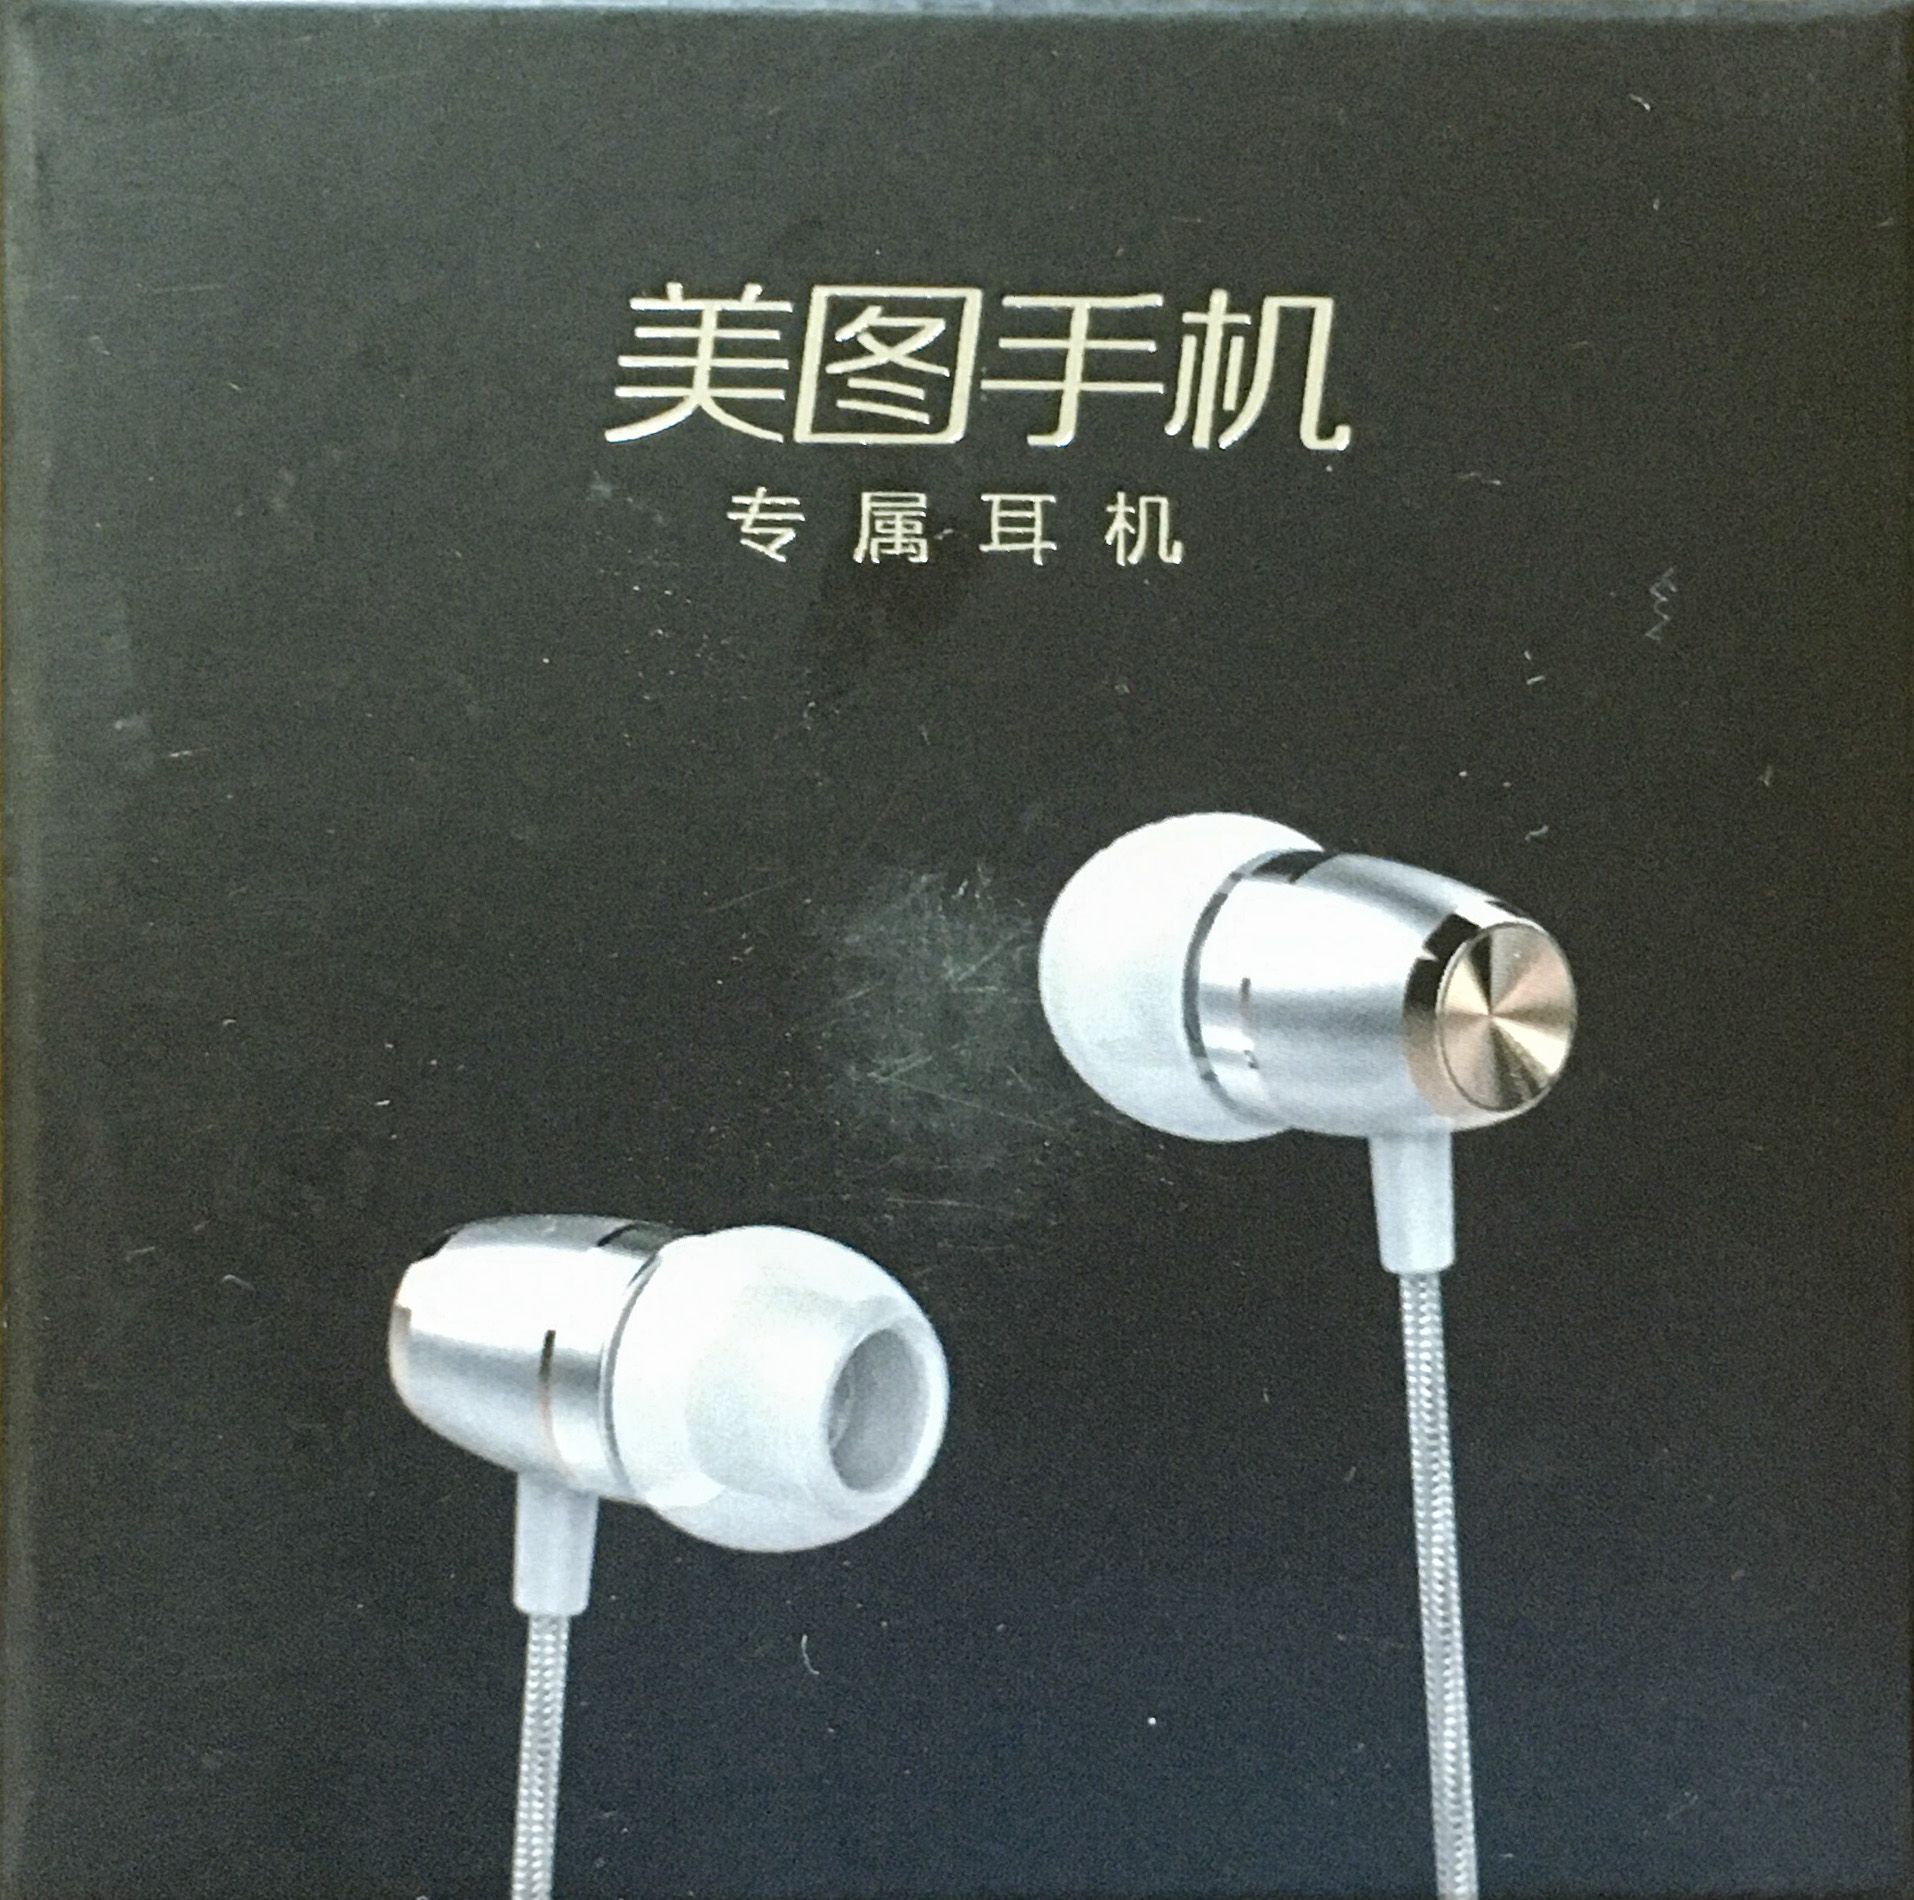 美图耳机原装 线控入耳式音乐耳机 美图原装耳机